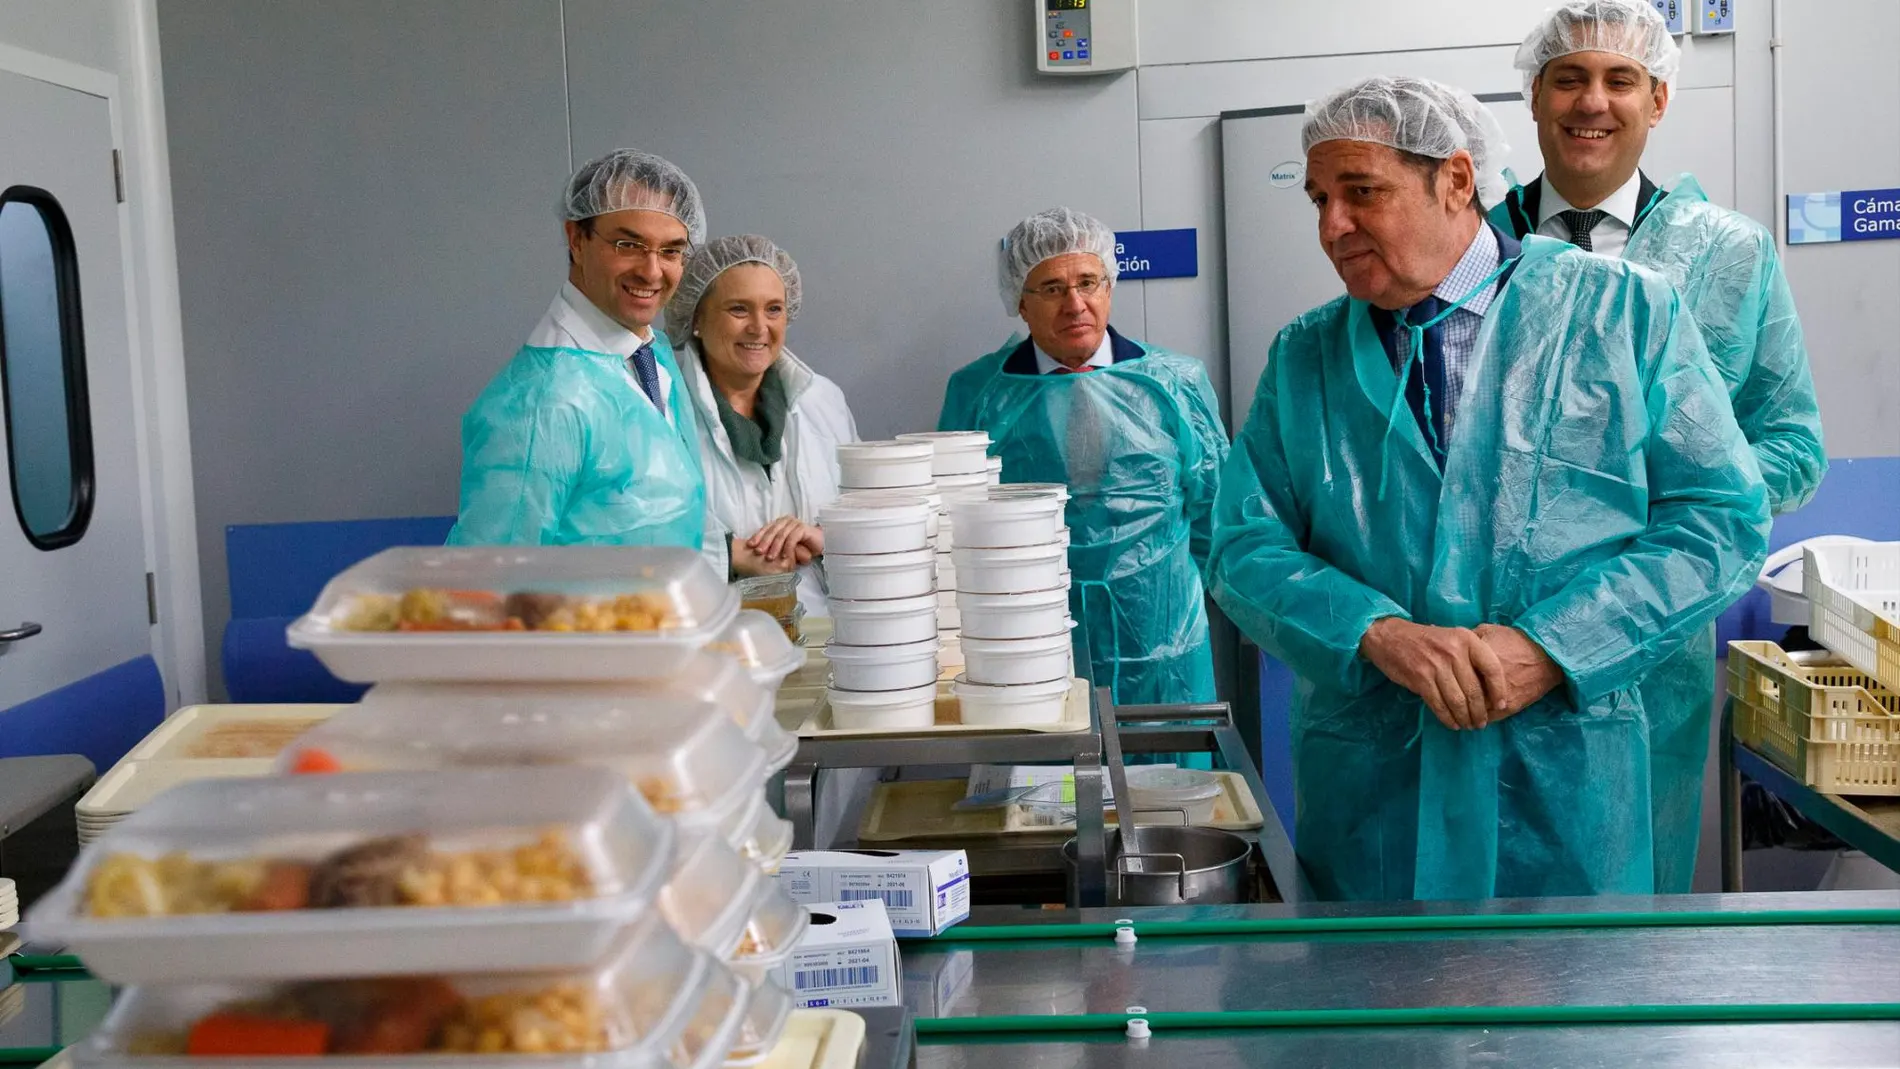 El consejero de Sanidad, Antonio María Sáez Aguado, visita la cocina de línea fría del Complejo Asistencial de Zamora, en su décimo aniversario